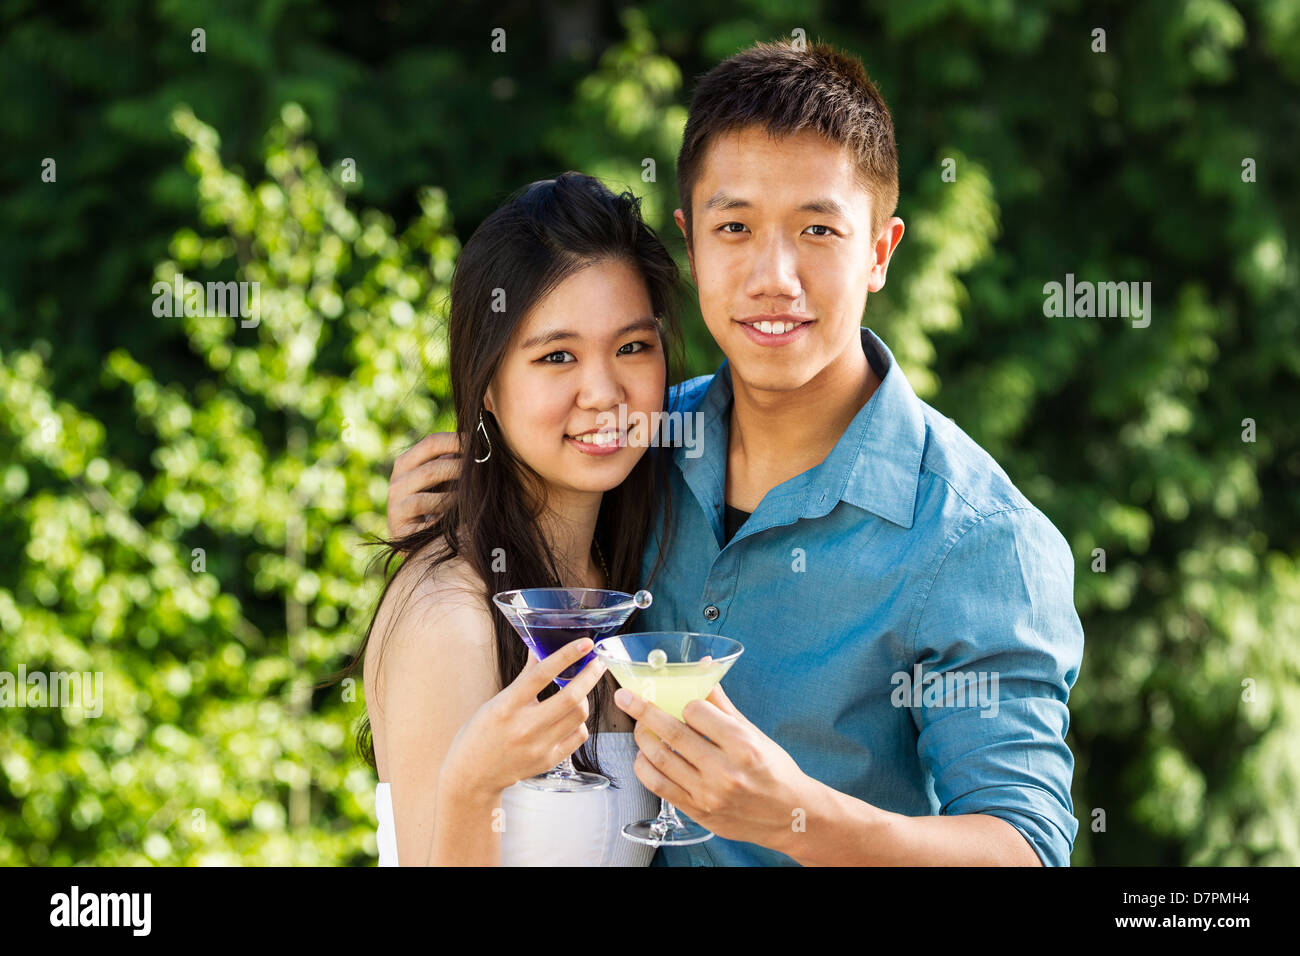 Horizontale Foto eines jungen Erwachsenen Paares, Vorderansicht, hält Getränke im Freien mit grünen Bäumen im Hintergrund Stockfoto